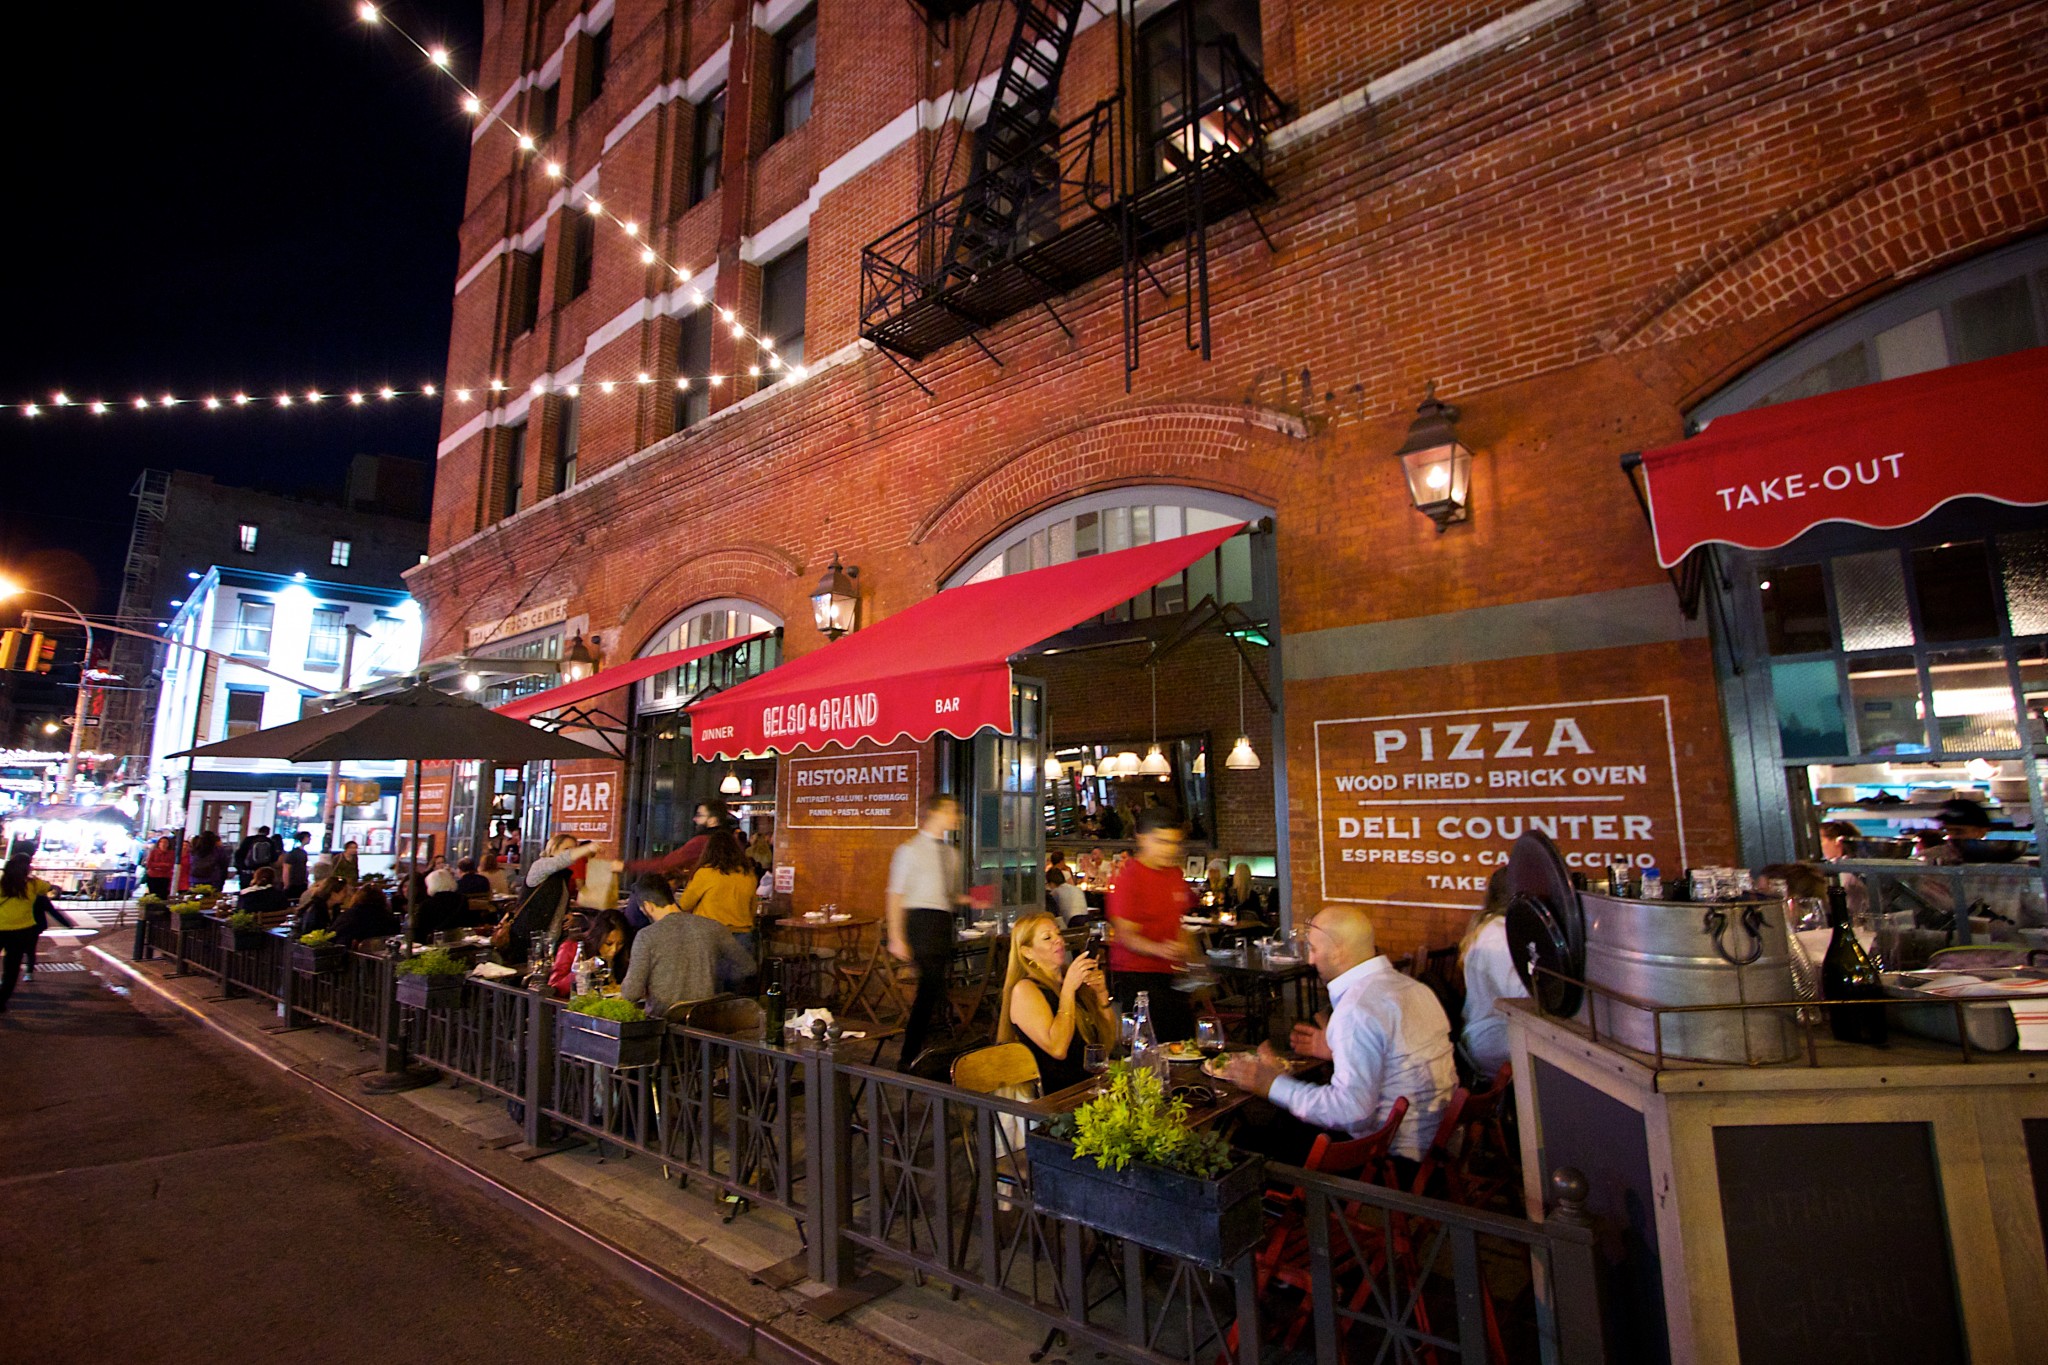 De beste Italiaan in Little Italy, New York is Gelso & Grand. Een van onze new york restaurant tips